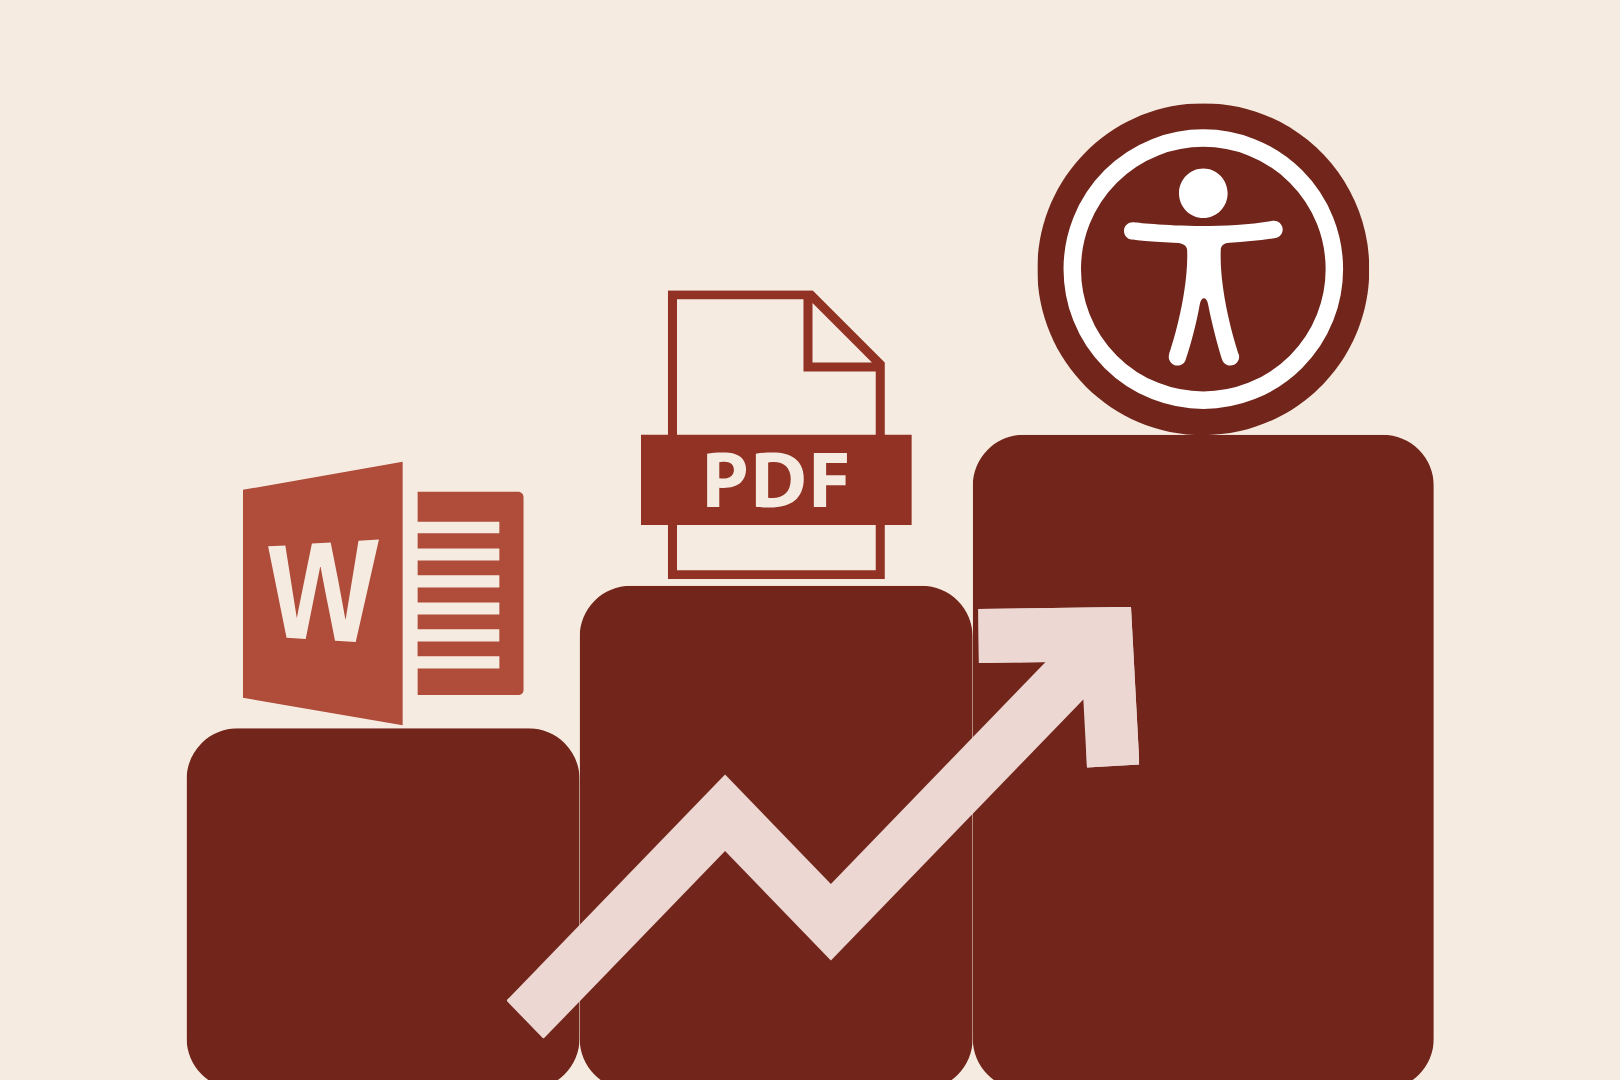 Kolme porrasta, joista ensimmäisellä on Wordin logo, seuraavalla PDF-logo ja viimeisellä korkeimmalla saavutettavuus-logo.